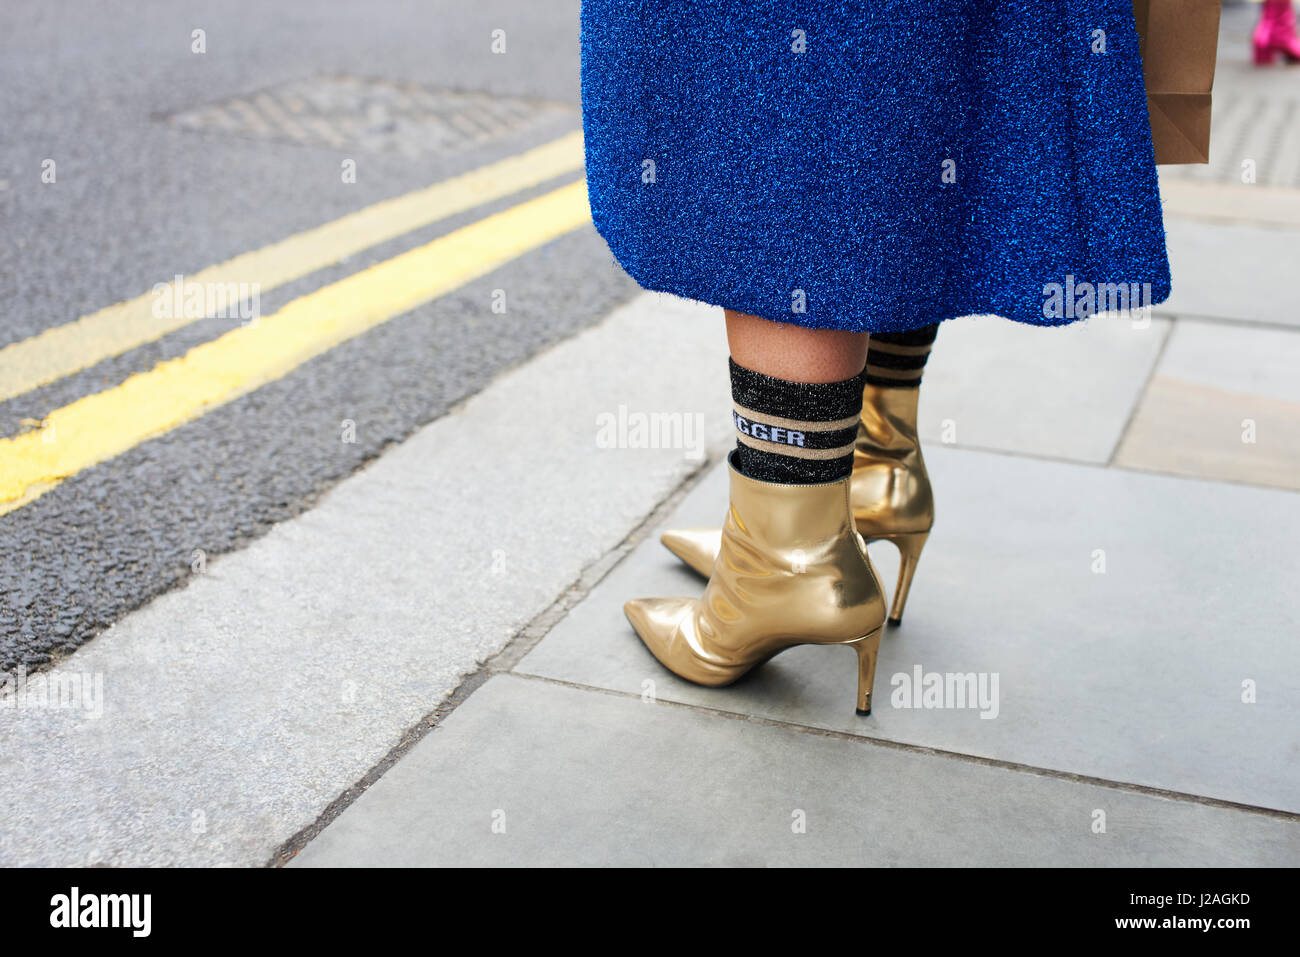 Londres - Février 2017 : faible section of woman wearing blue jupe de laine, des chaussettes et des bottes d'or debout dans la rue lors de la London Fashion Week, horizontal Banque D'Images